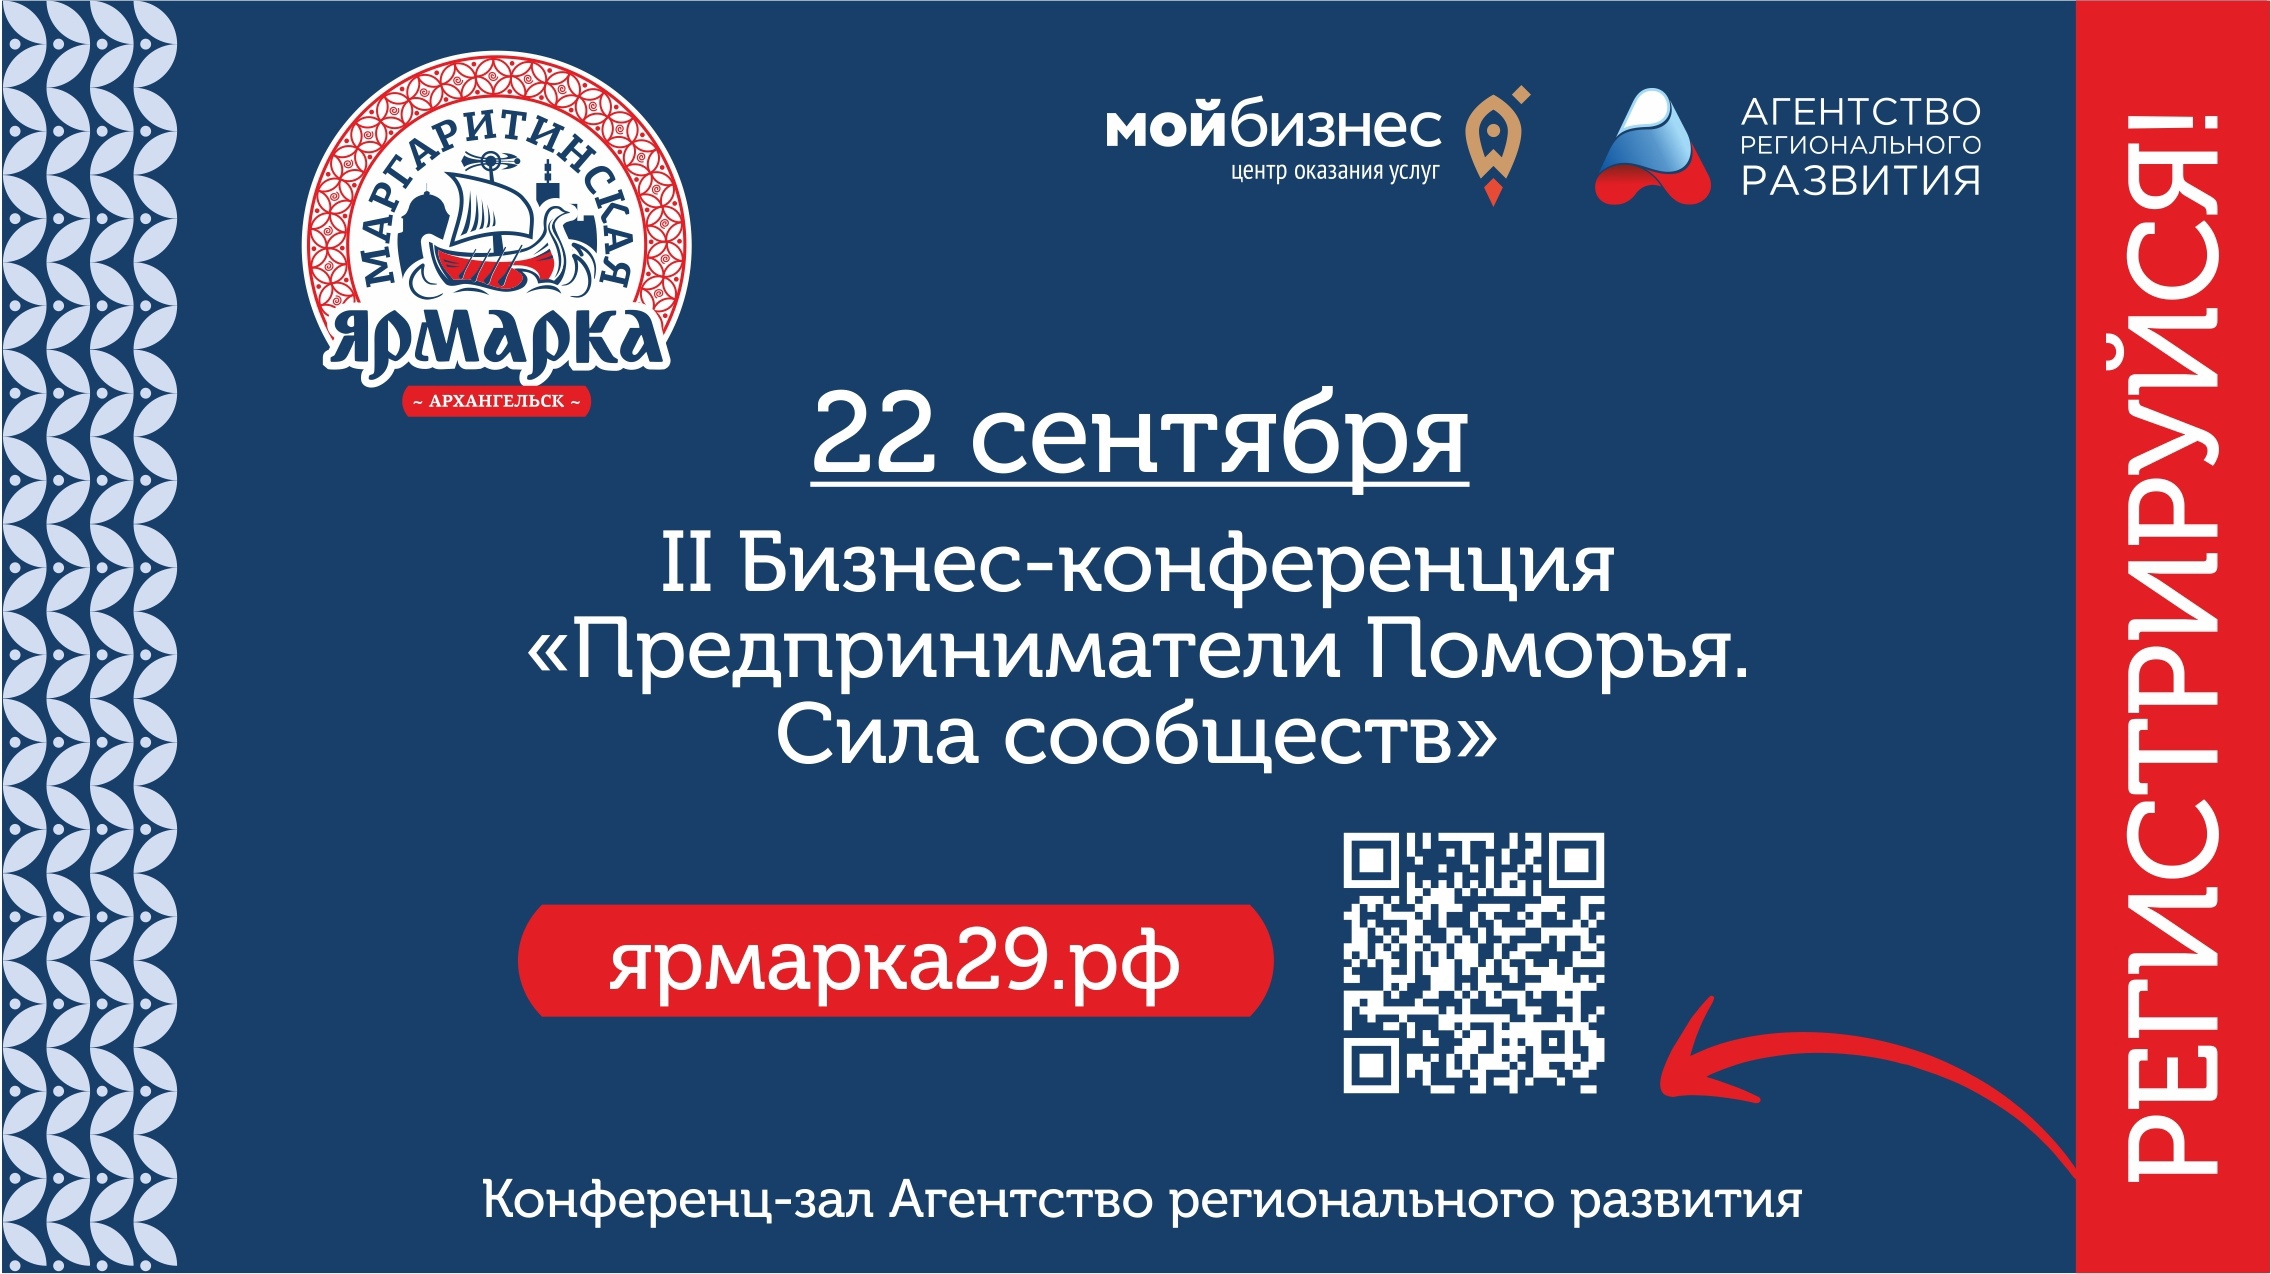 В Архангельске состоится II Бизнес-конференция «Предприниматели Поморья. Сила сообществ»